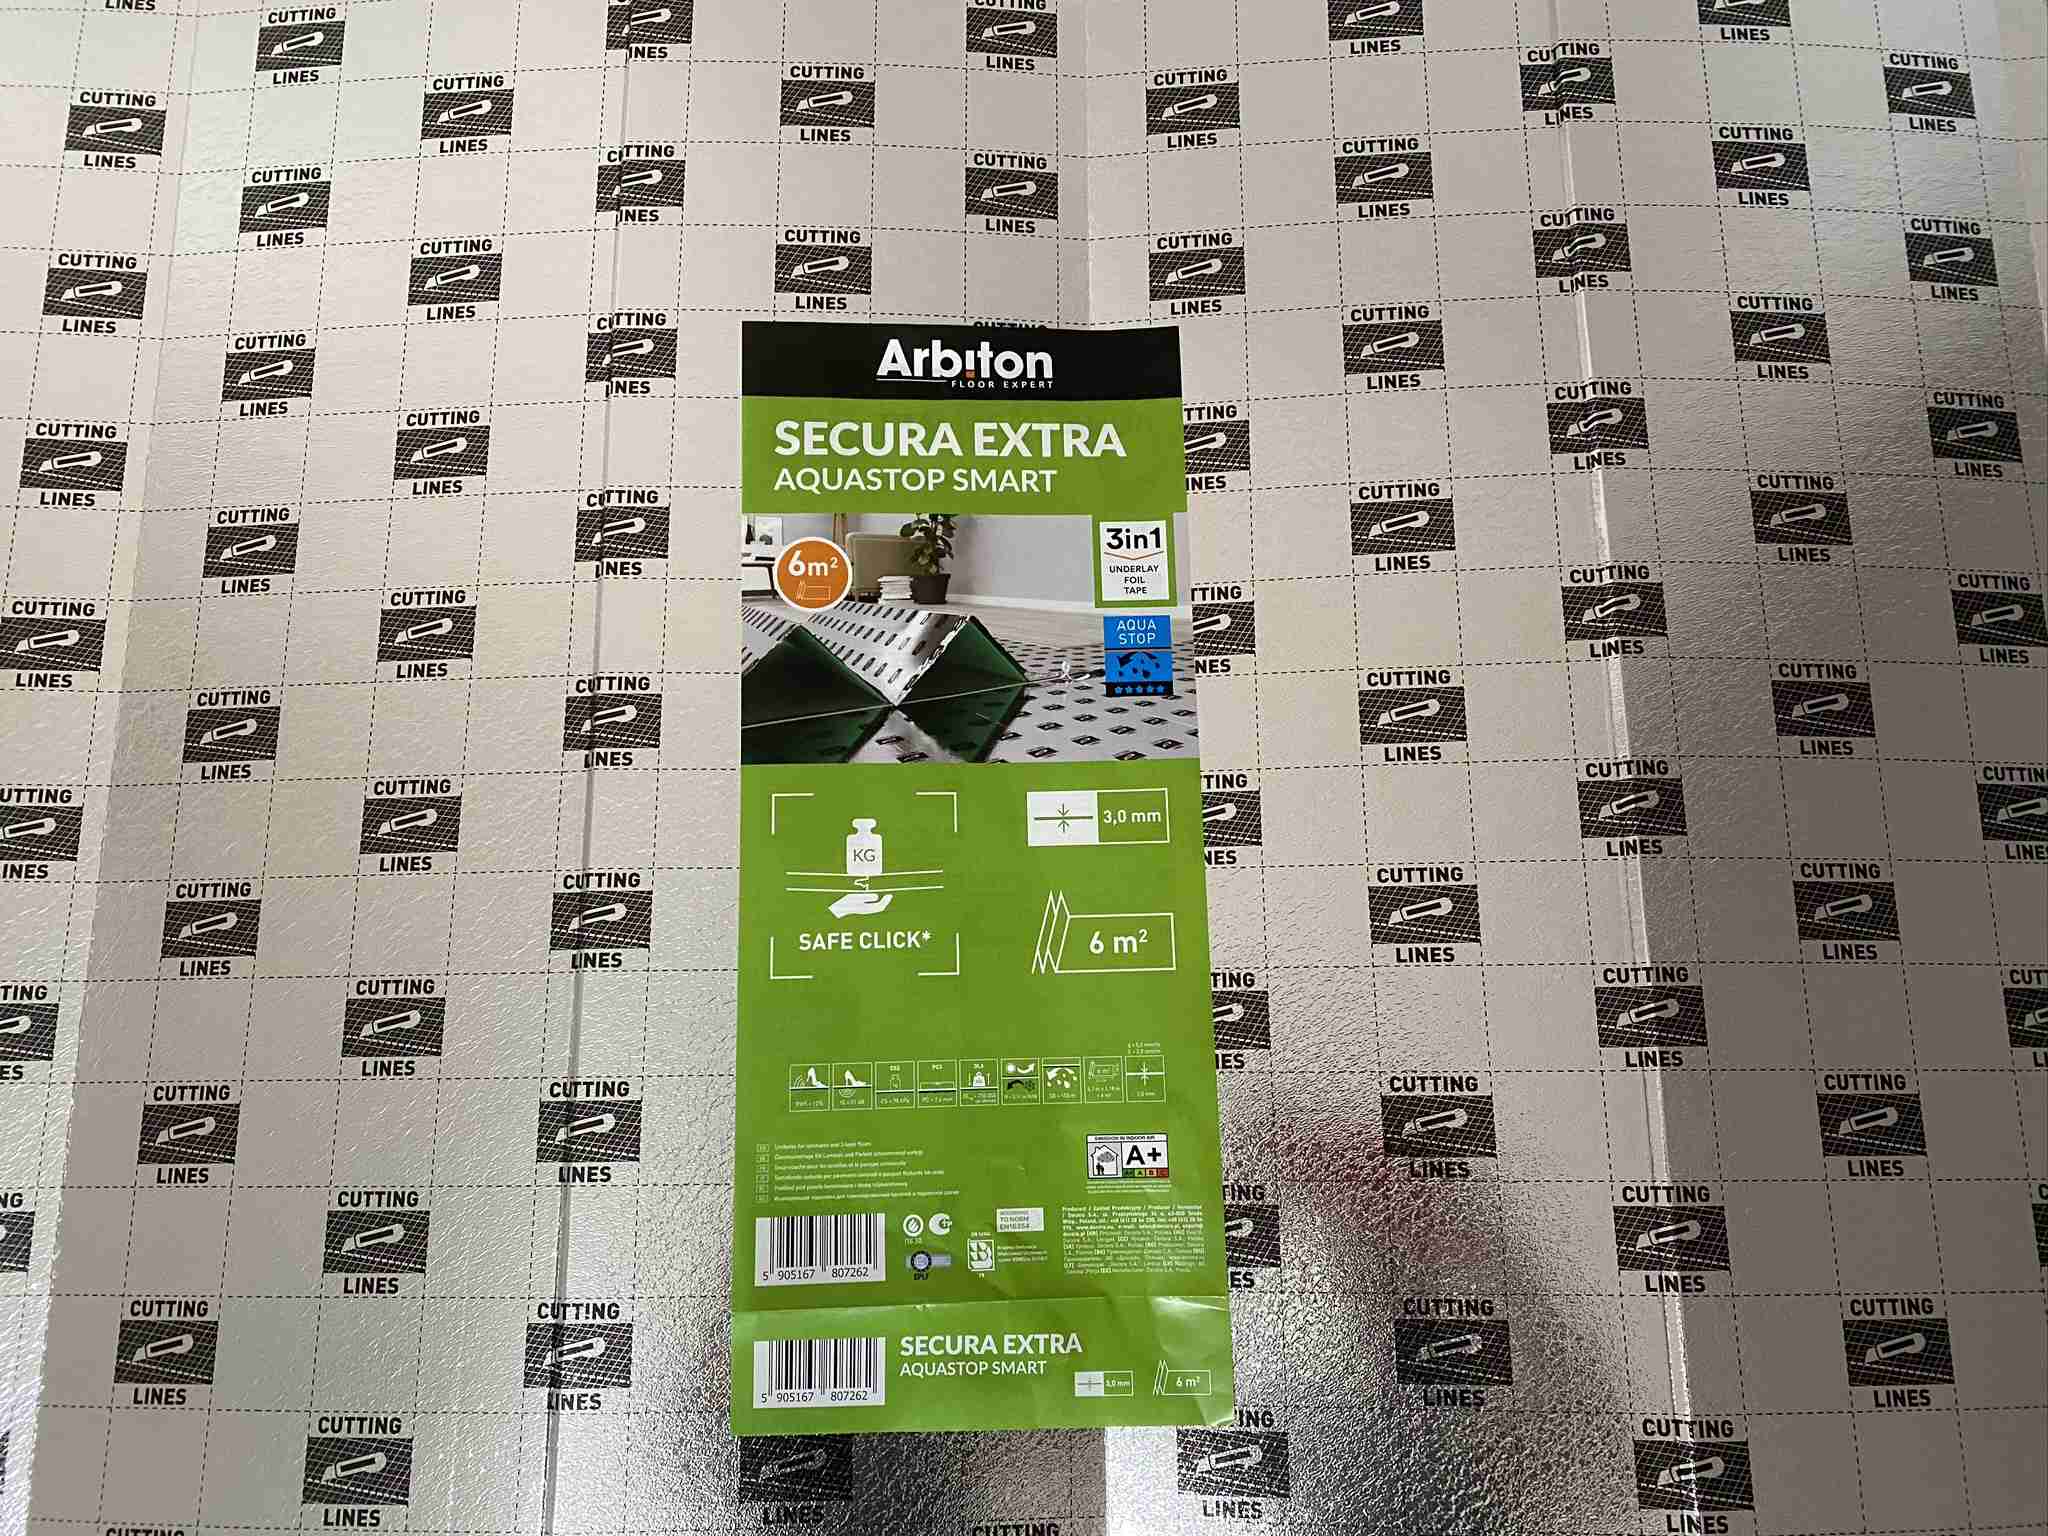 Arbiton Secura Extra Aquastop Smart 3in1